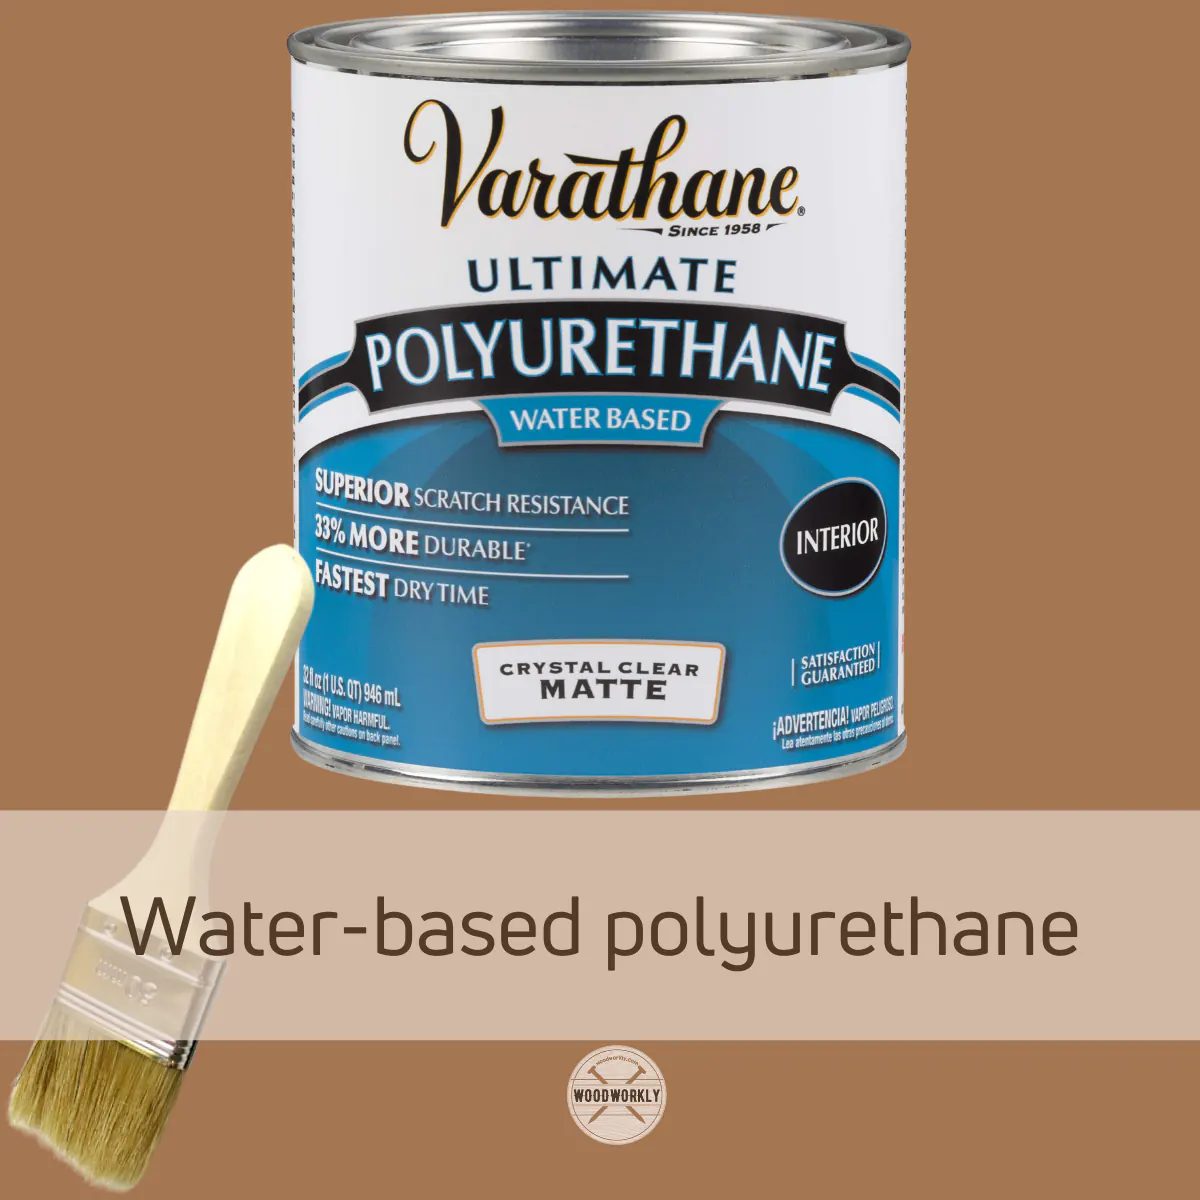 Water-based polyurethane